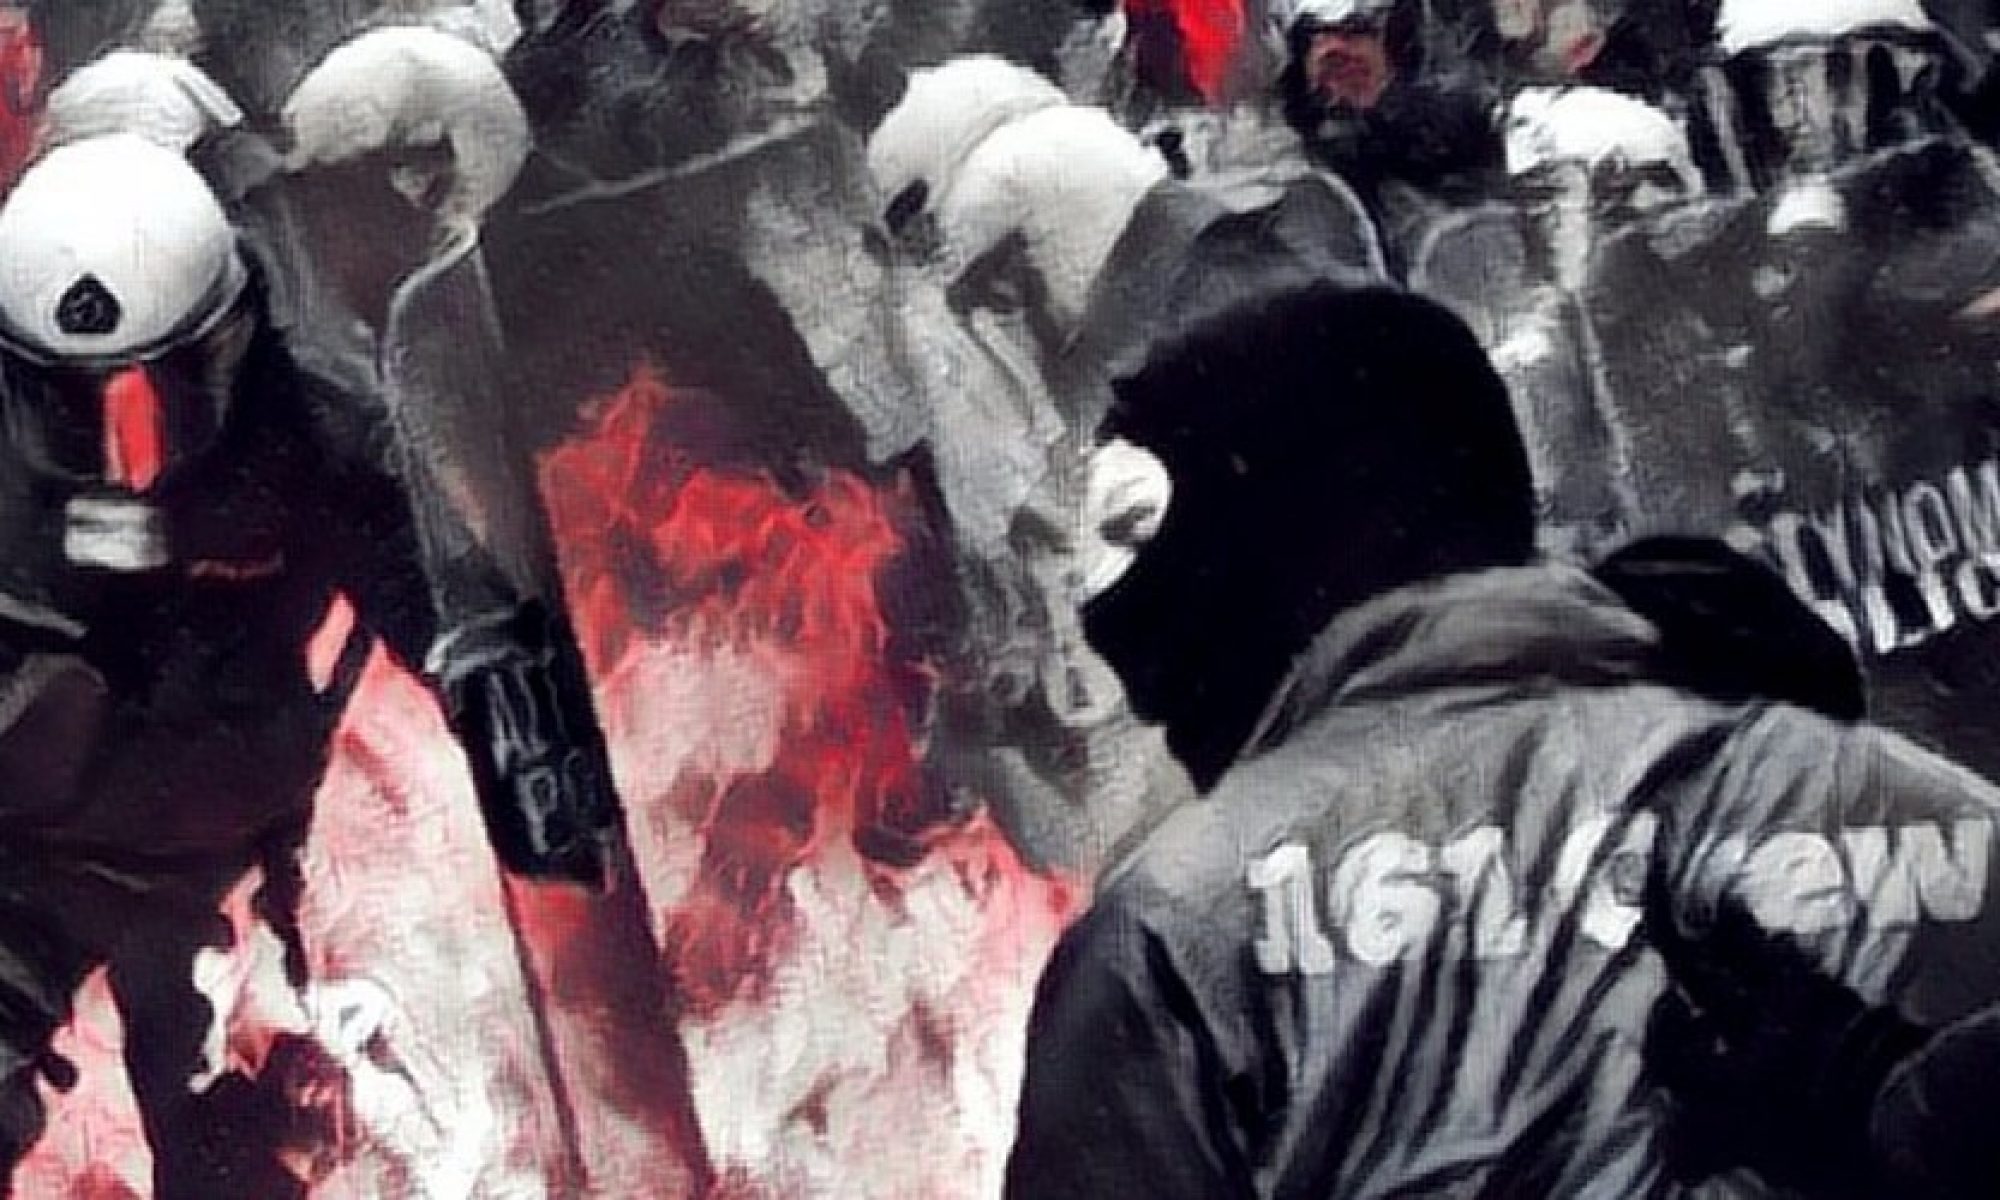 Antifa Riot